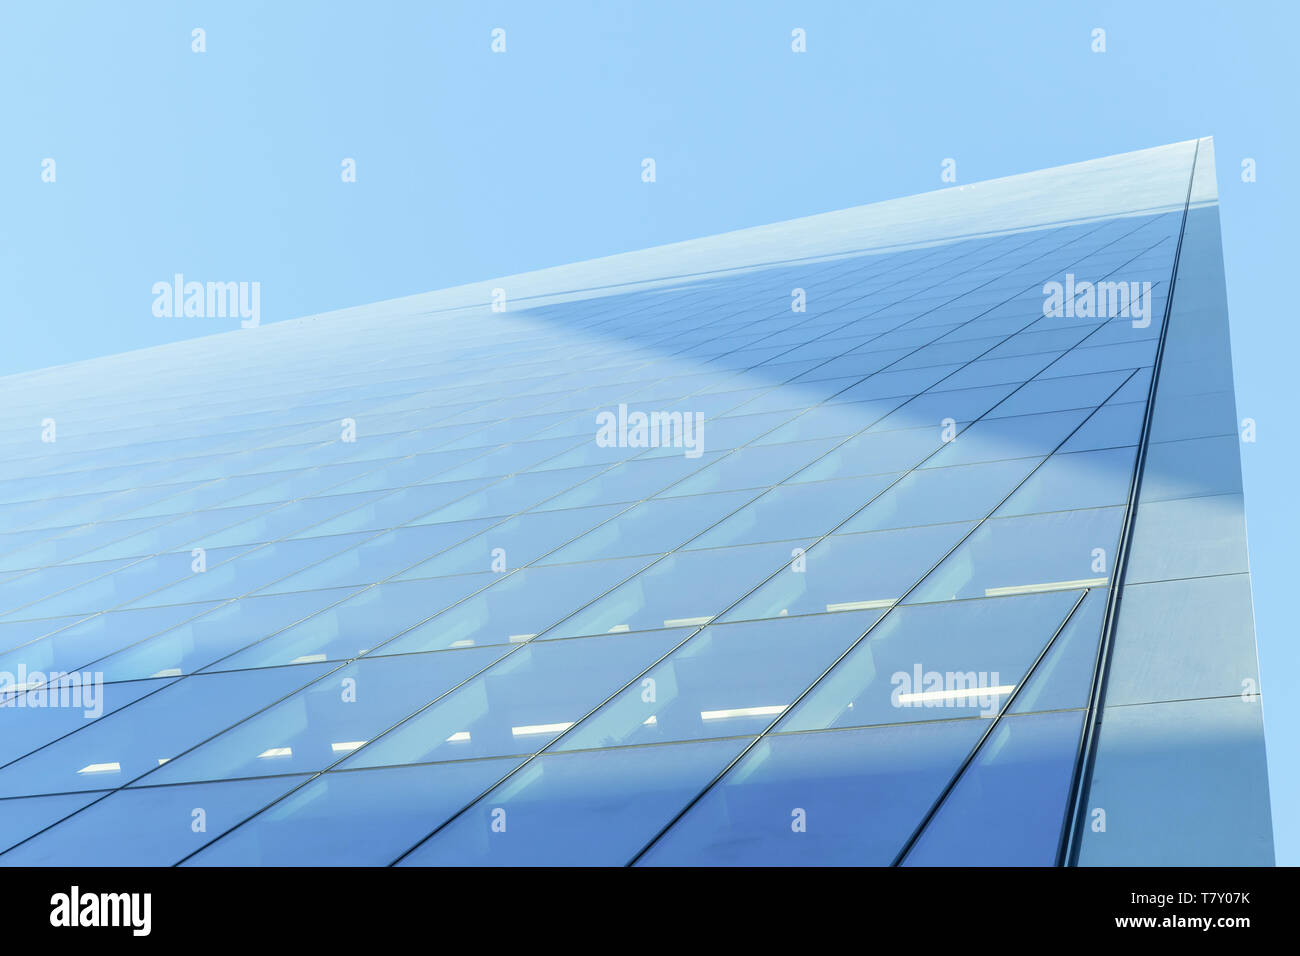 Abstrakte moderne Architektur Fragment, Ecke von Wänden aus glänzendem Glas und Stahl unter blauem Himmel Stockfoto